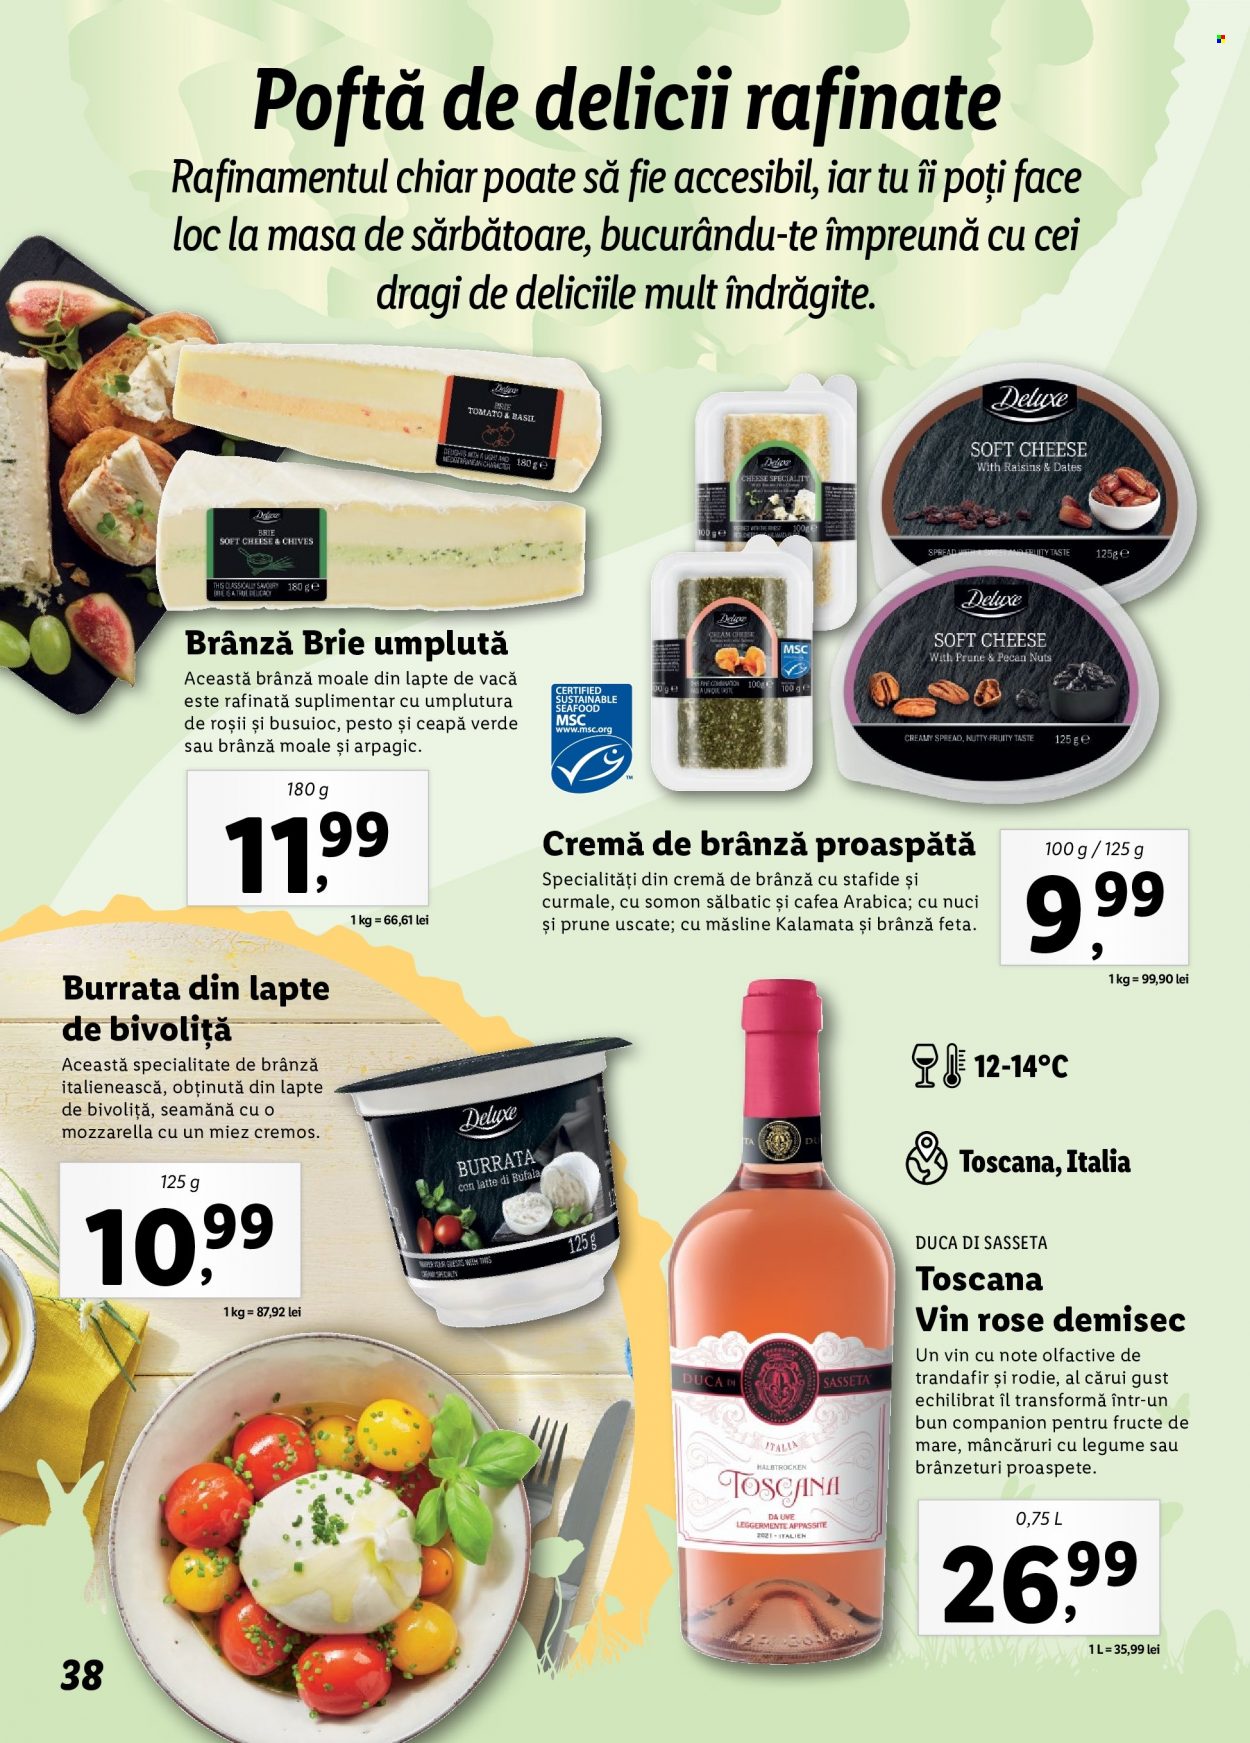 thumbnail - Cataloage Lidl - Produse în vânzare - alcool, ceapă verde, roșie, fructe de mare, brânză proaspătă, brie, mozzarella, cremă de brânză, burrata, pesto, vin rose, vin. Pagina 38.